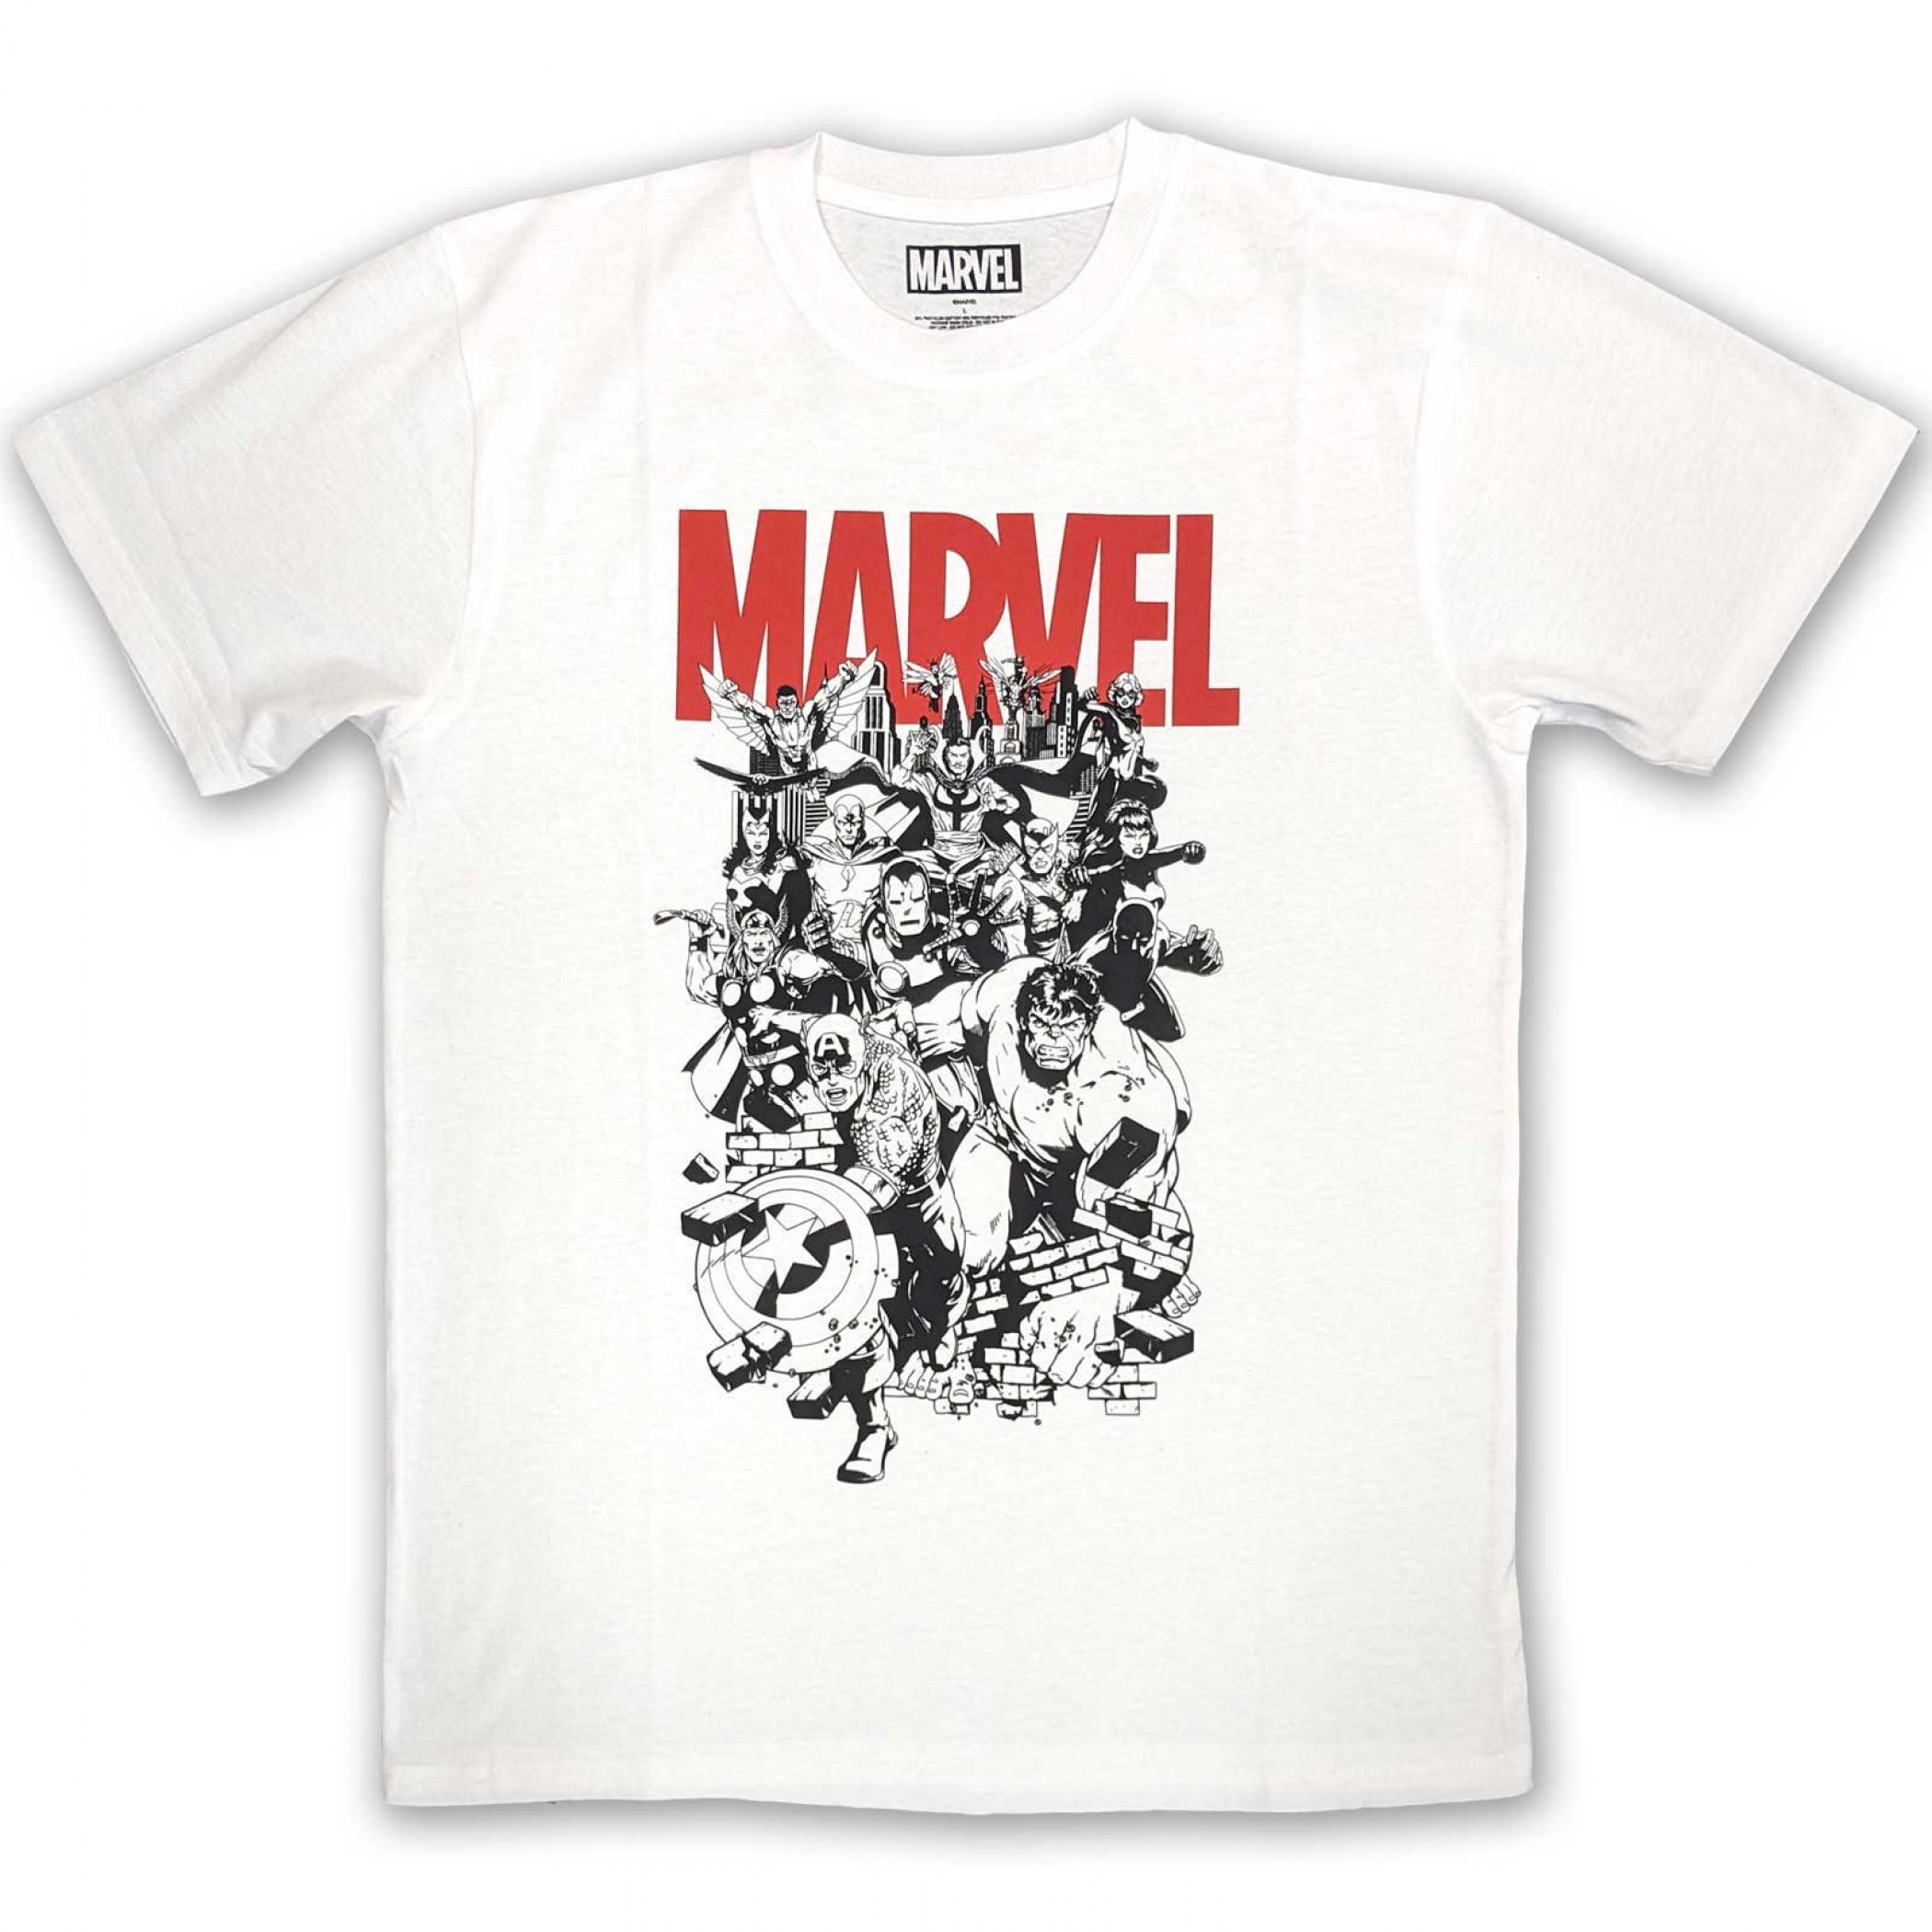 Avengers Black and White Ensemble T-Shirt